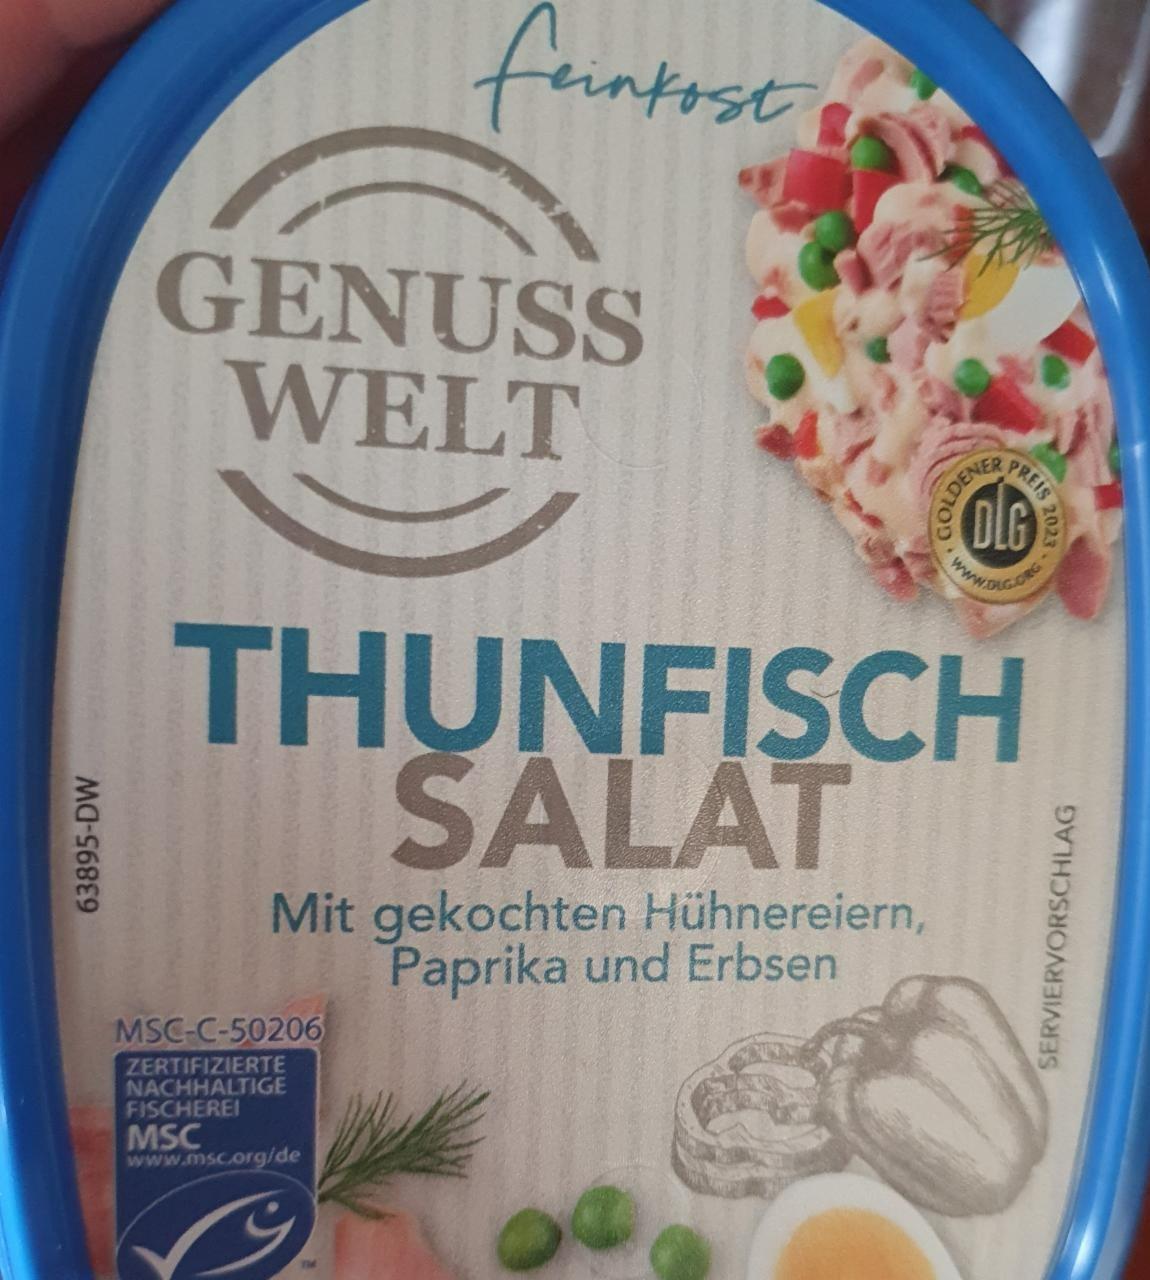 Fotografie - Thunfisch salat Genuss Welt